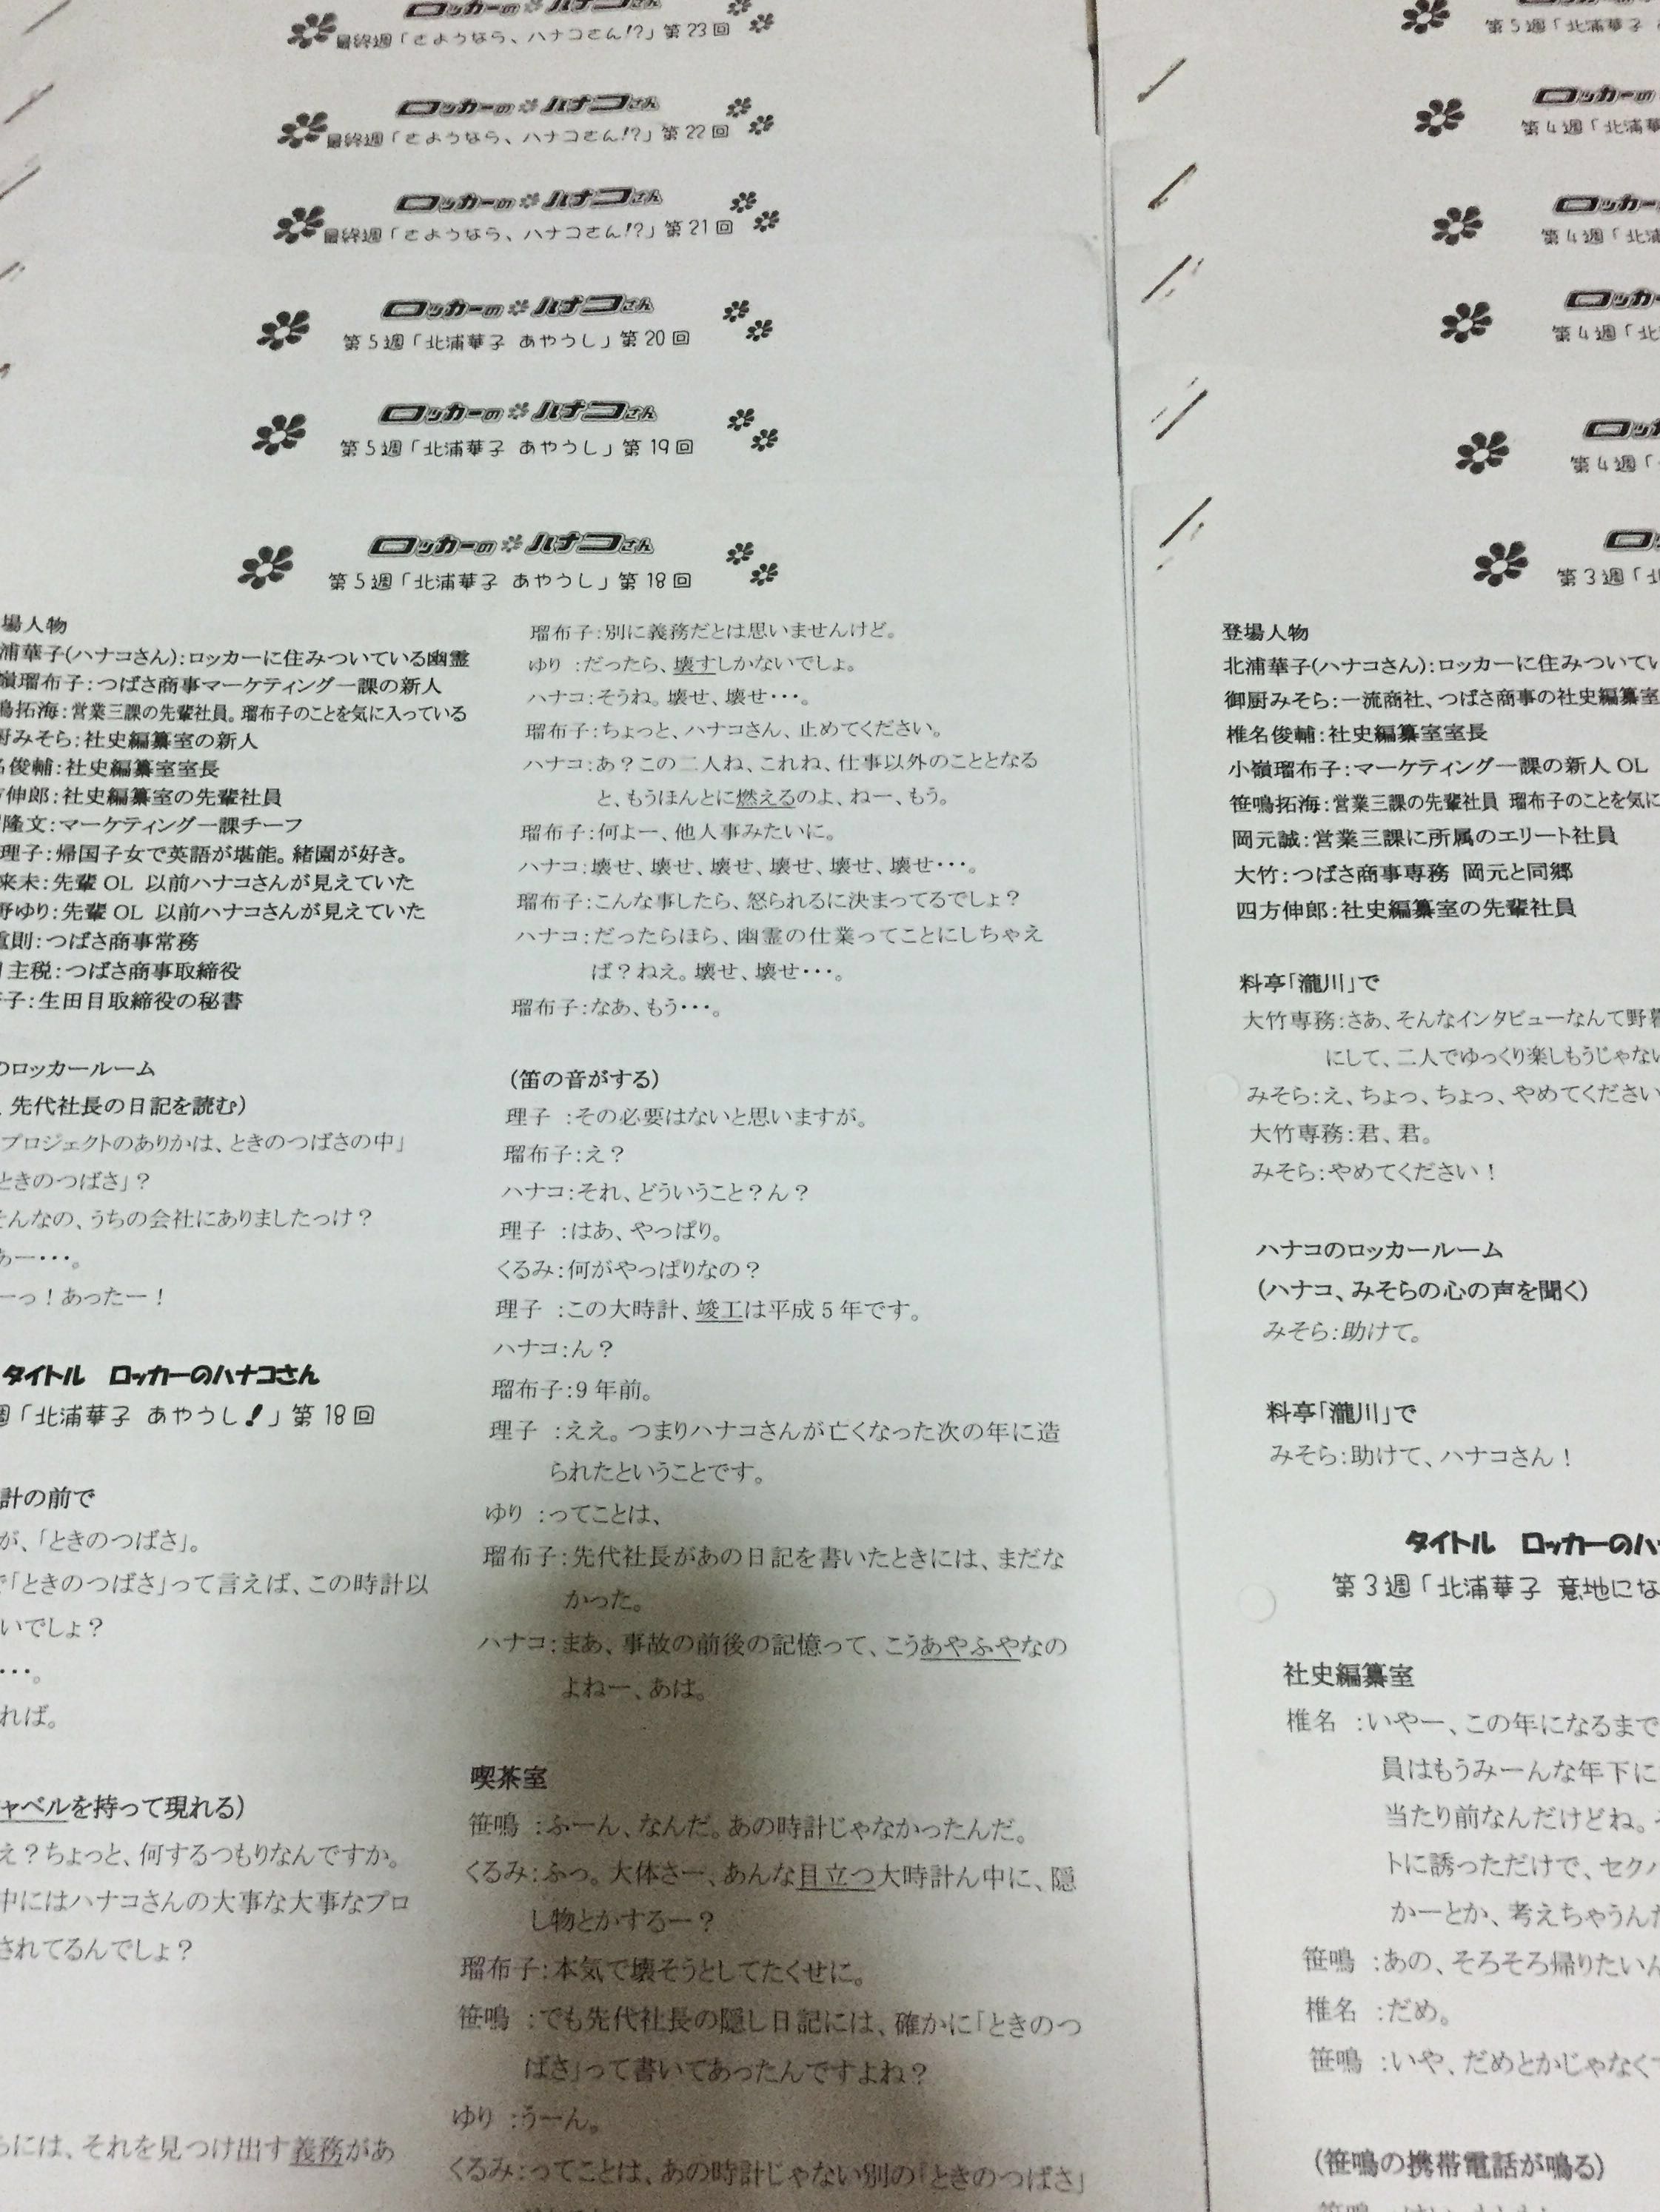 ロッカーのハナコさん Further Advance Japanese Notes Drama Scripts Hobbies Toys Books Magazines Assessment Books On Carousell